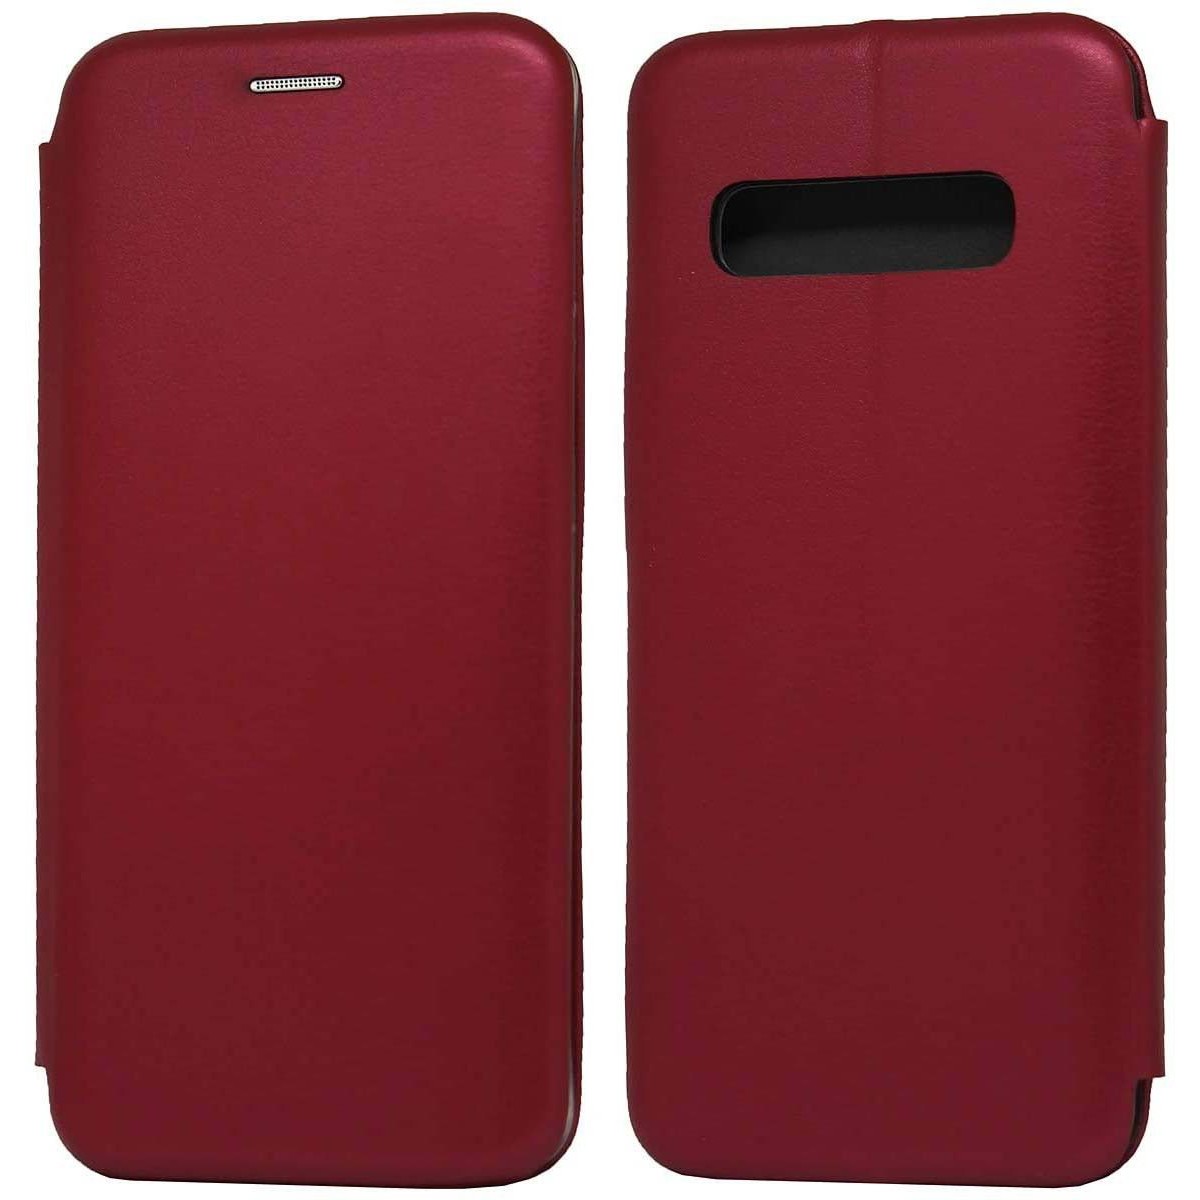 Funda Libro Soporte Magnética Elegance Roja para Iphone 11 Pro Max (6.5)